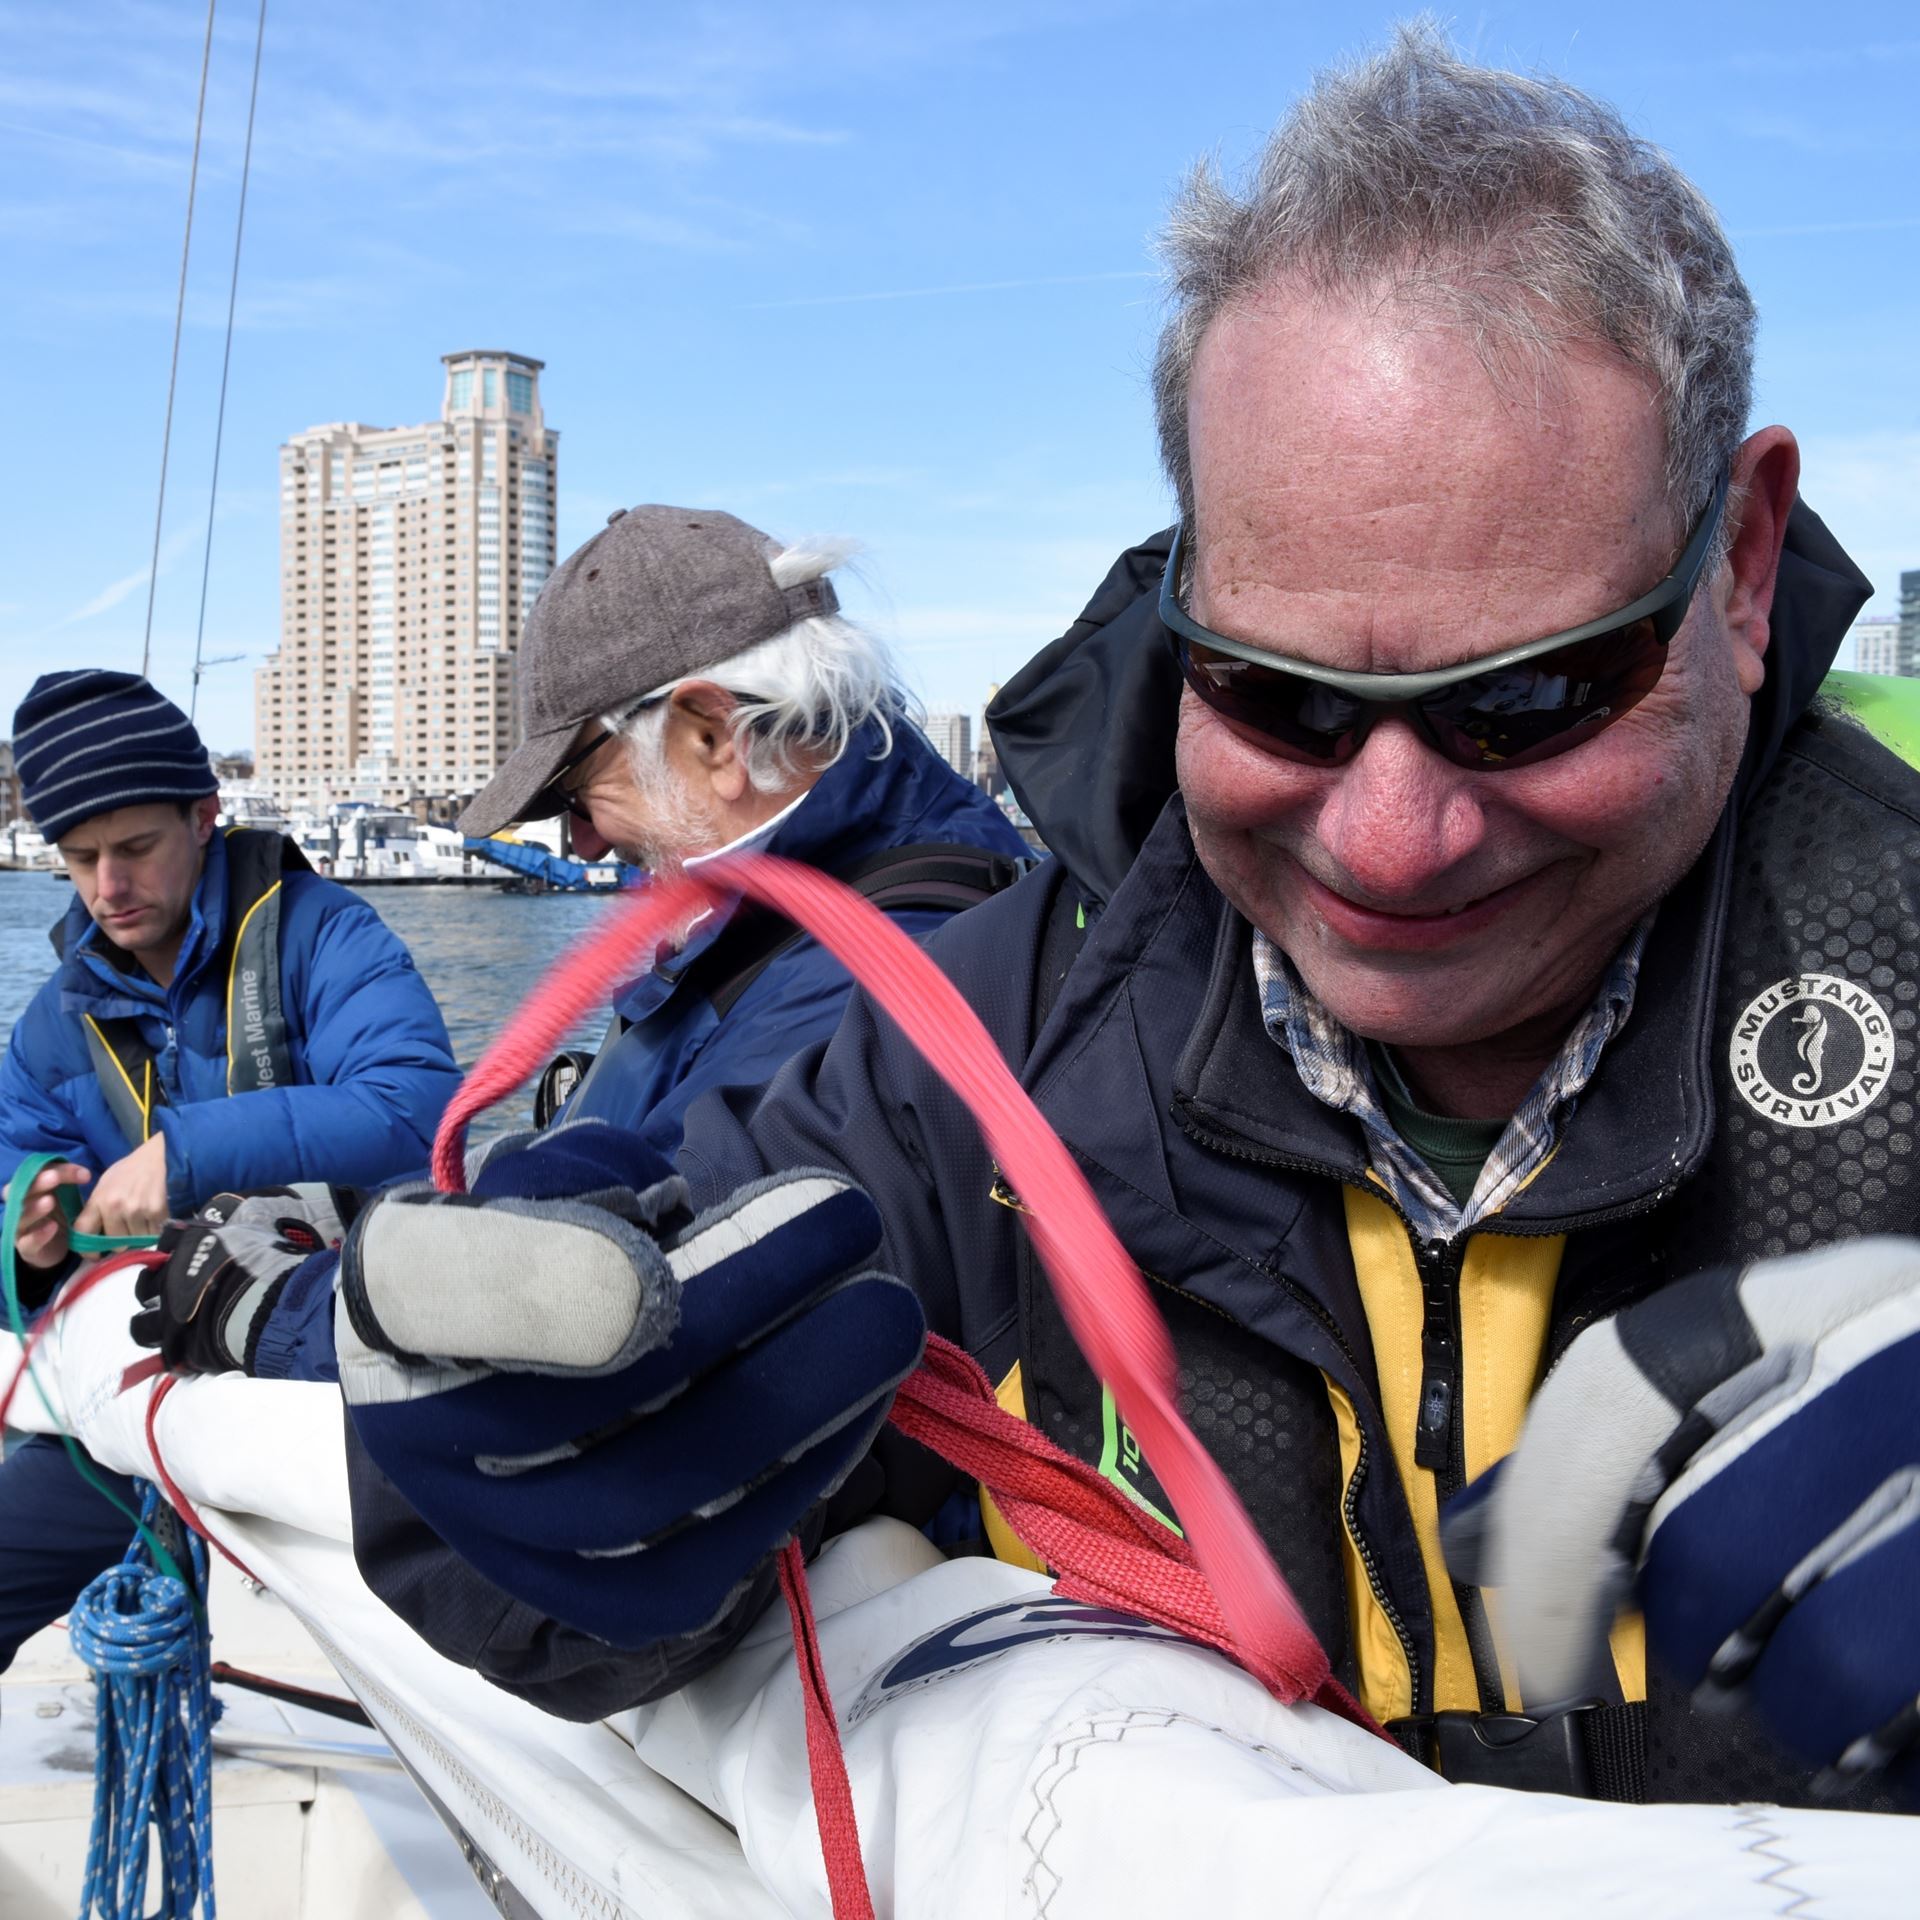 Coach Bruce & Coach Graham help George roll the Sonar mainsail after a spring sail